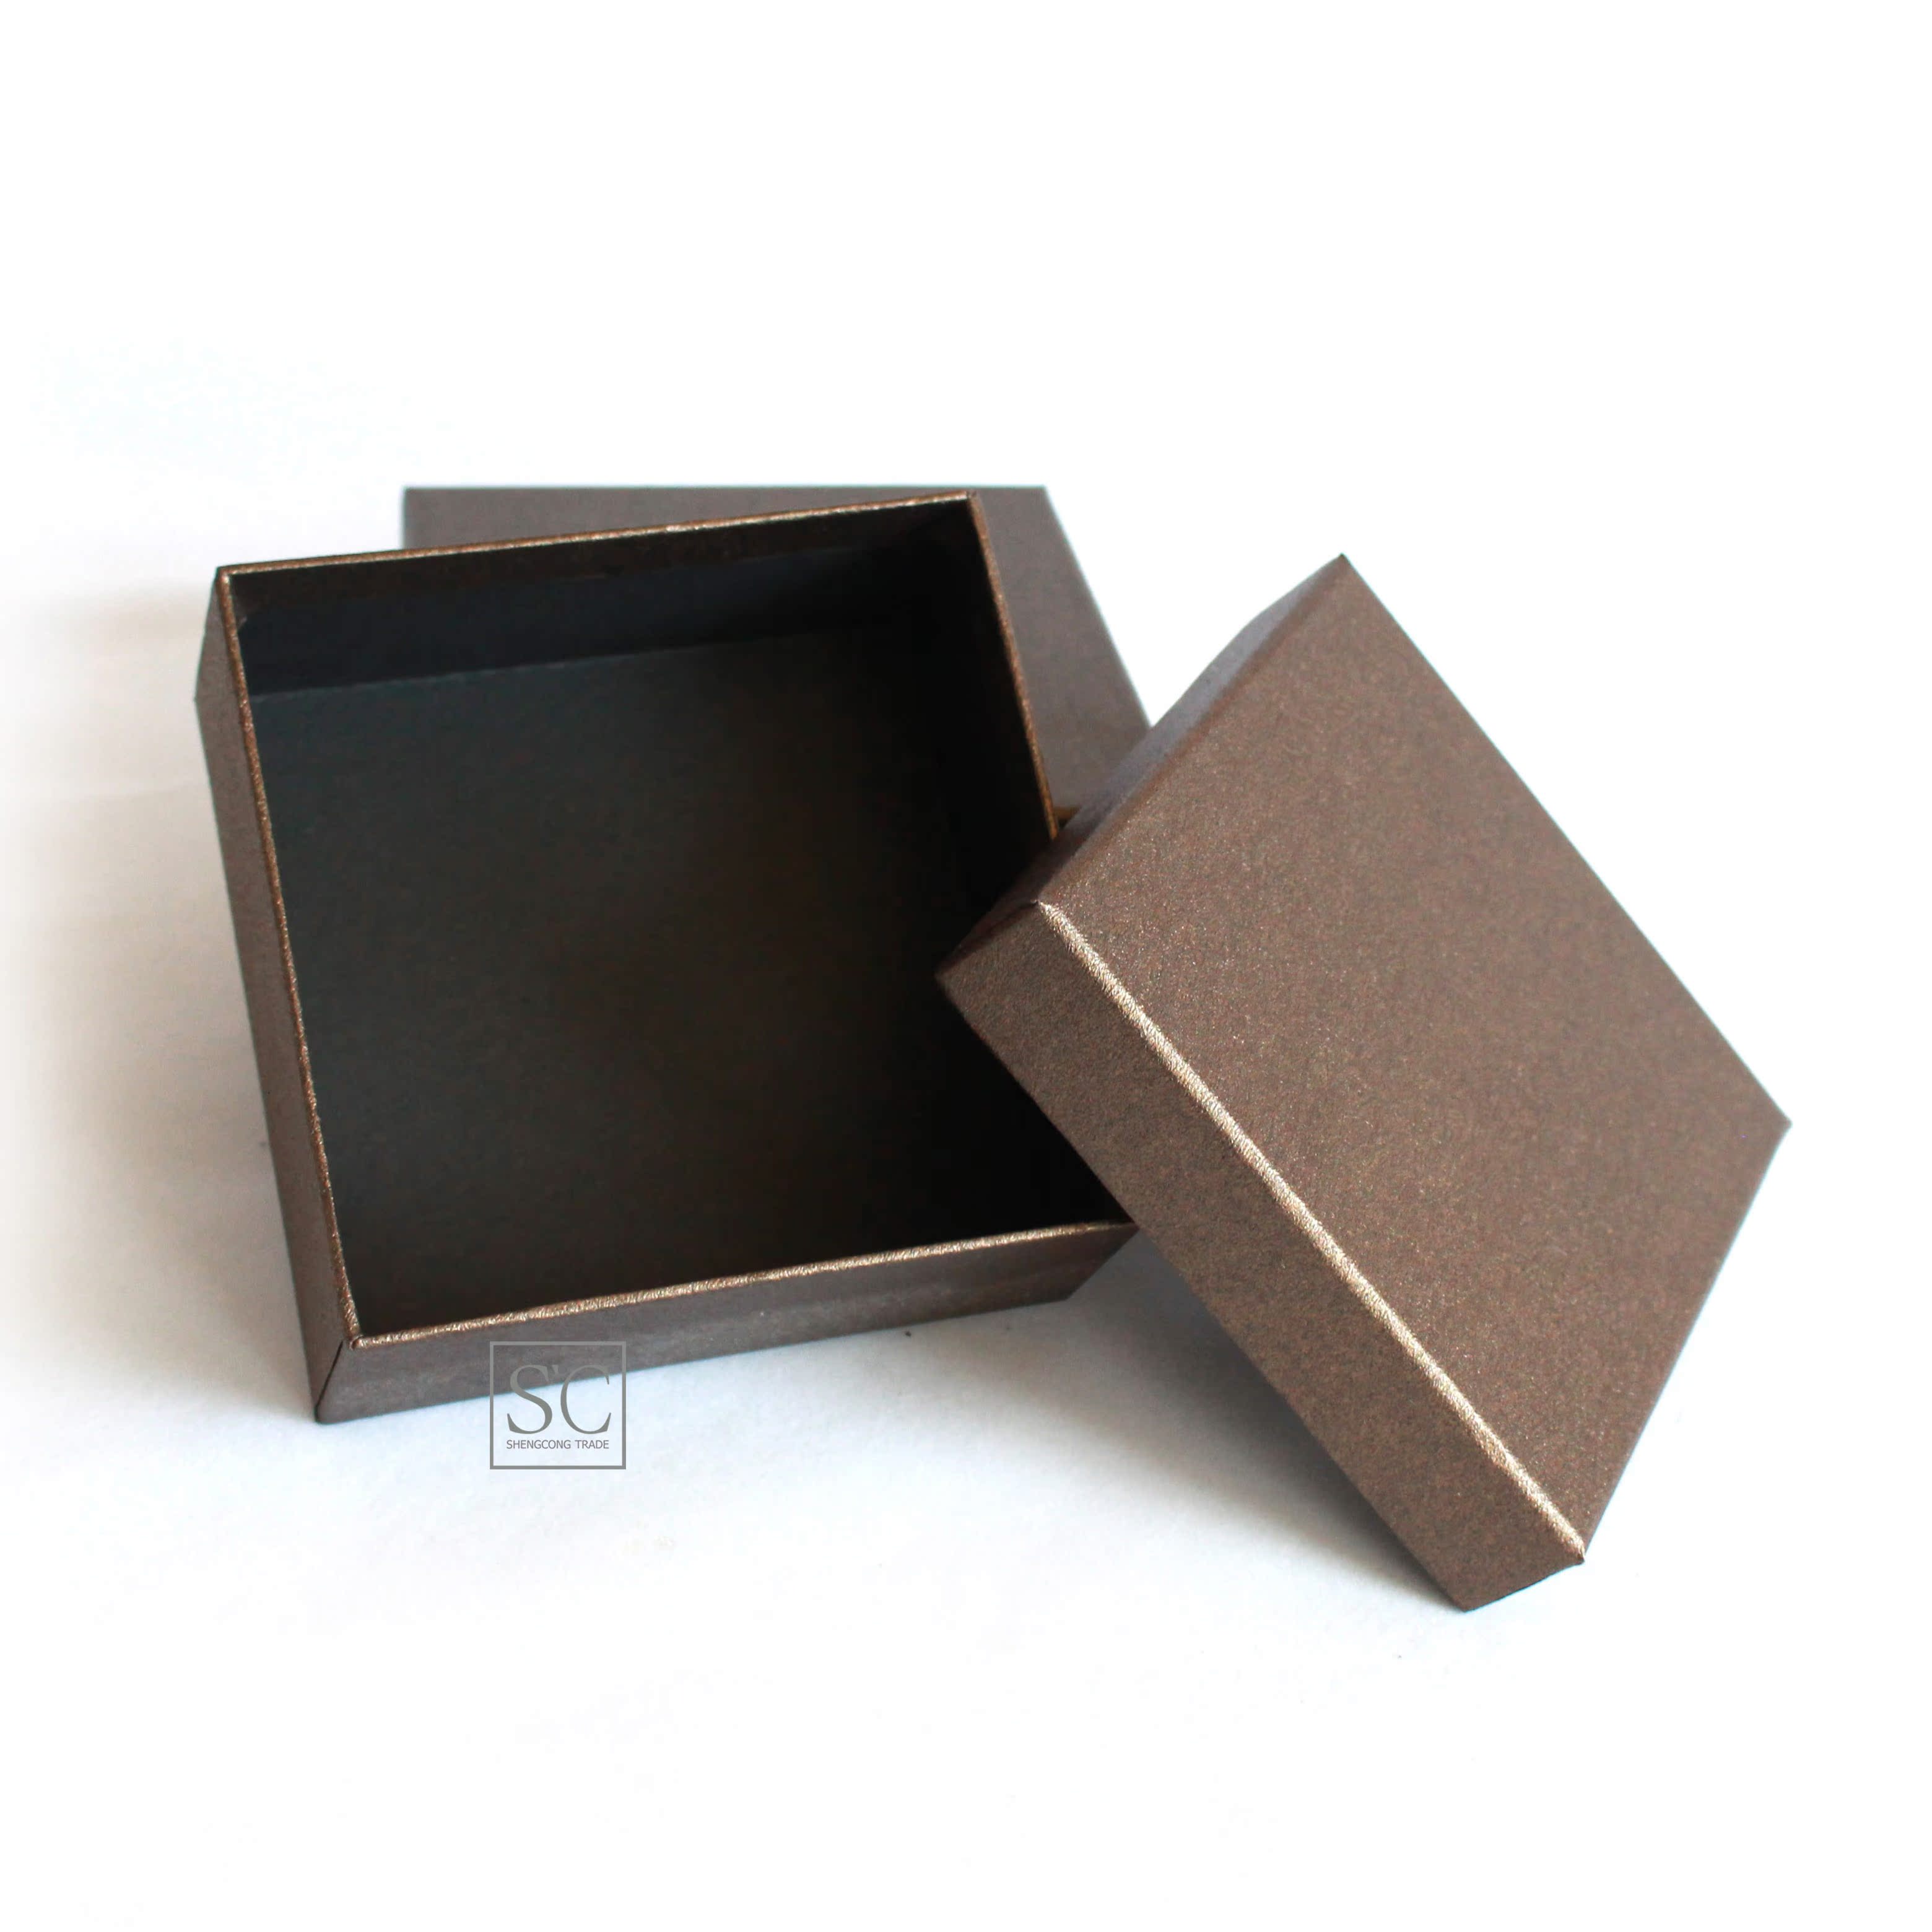 现货 咖啡色天地盖皮带盒 包装盒 高级礼盒纸盒定制 13*13*5.